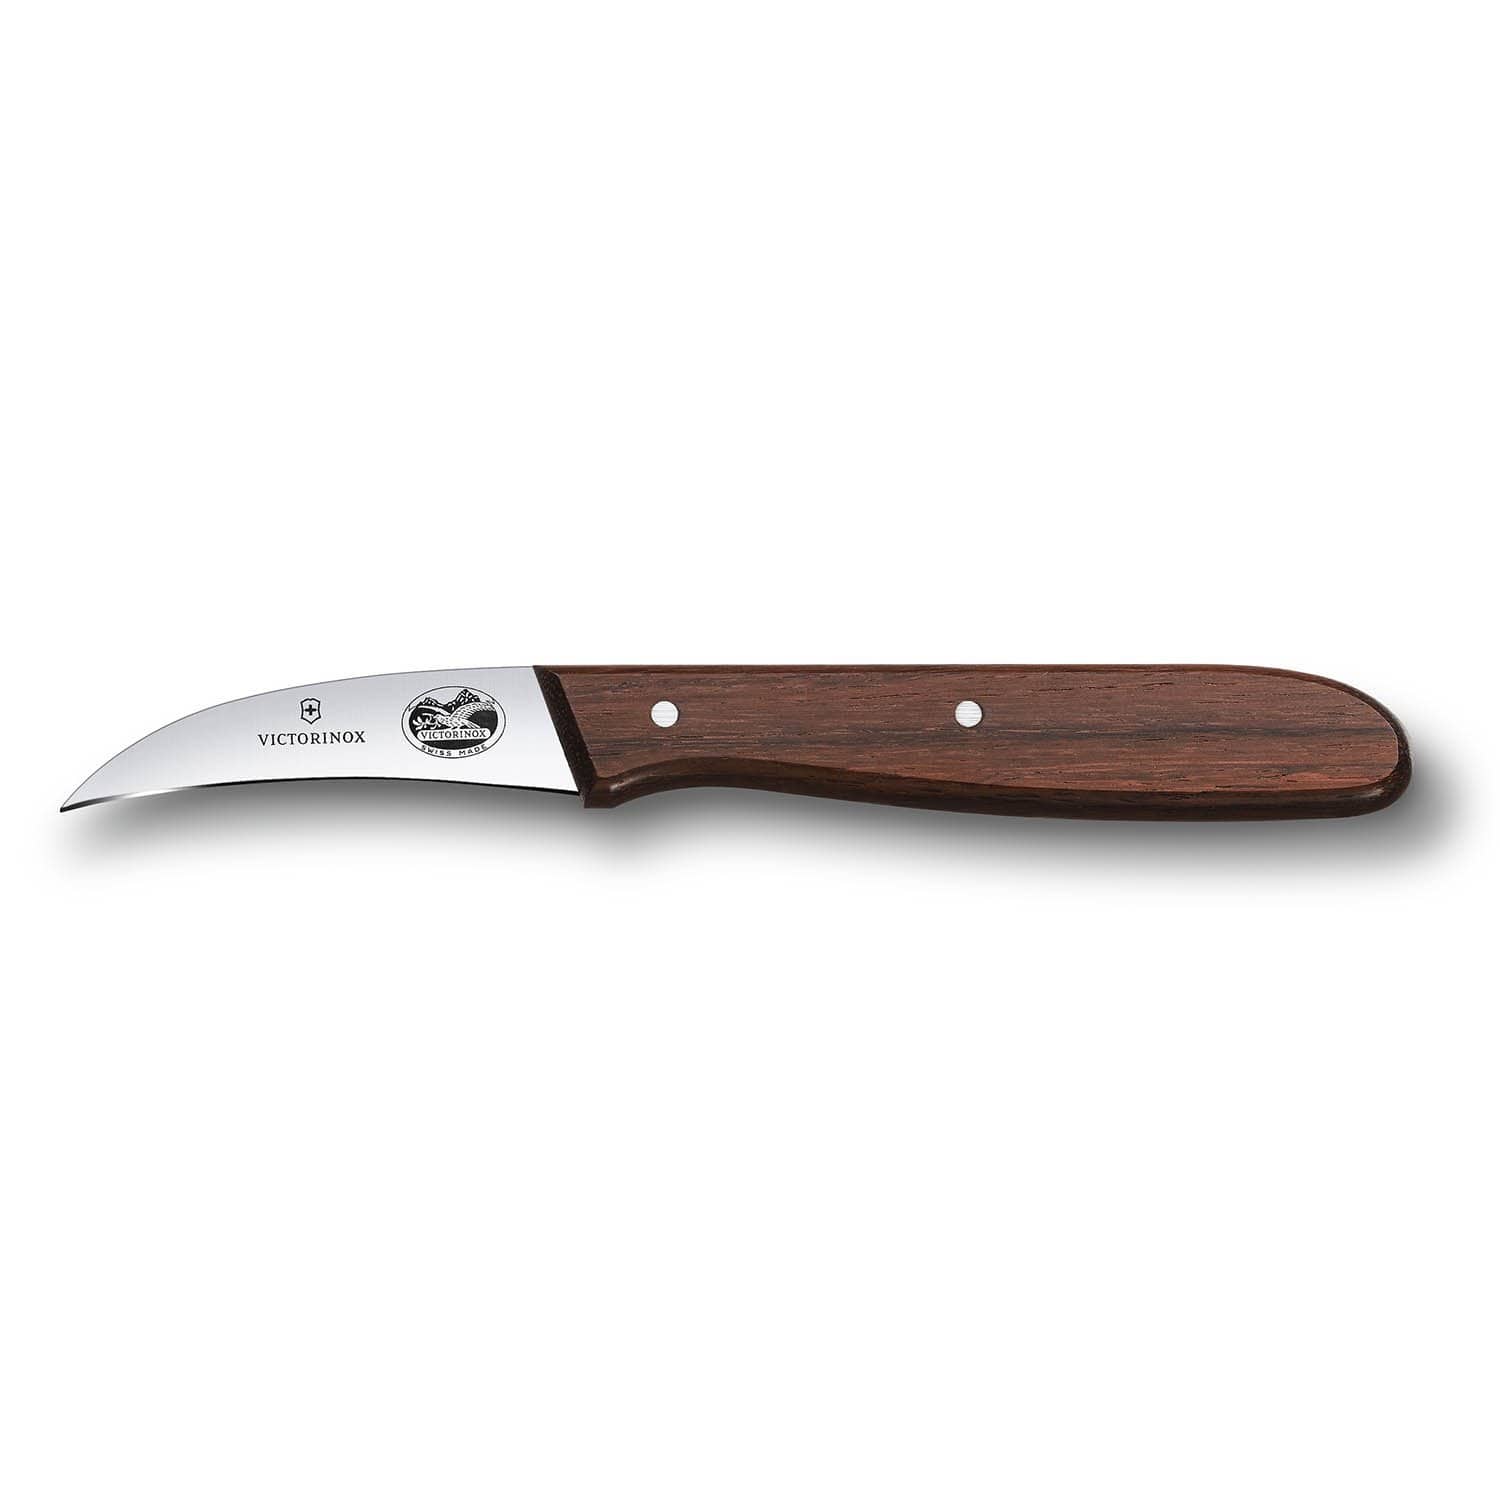 فيكتورينوكس – سكين تشكيل خشب الورد 6 سم – 5.3100